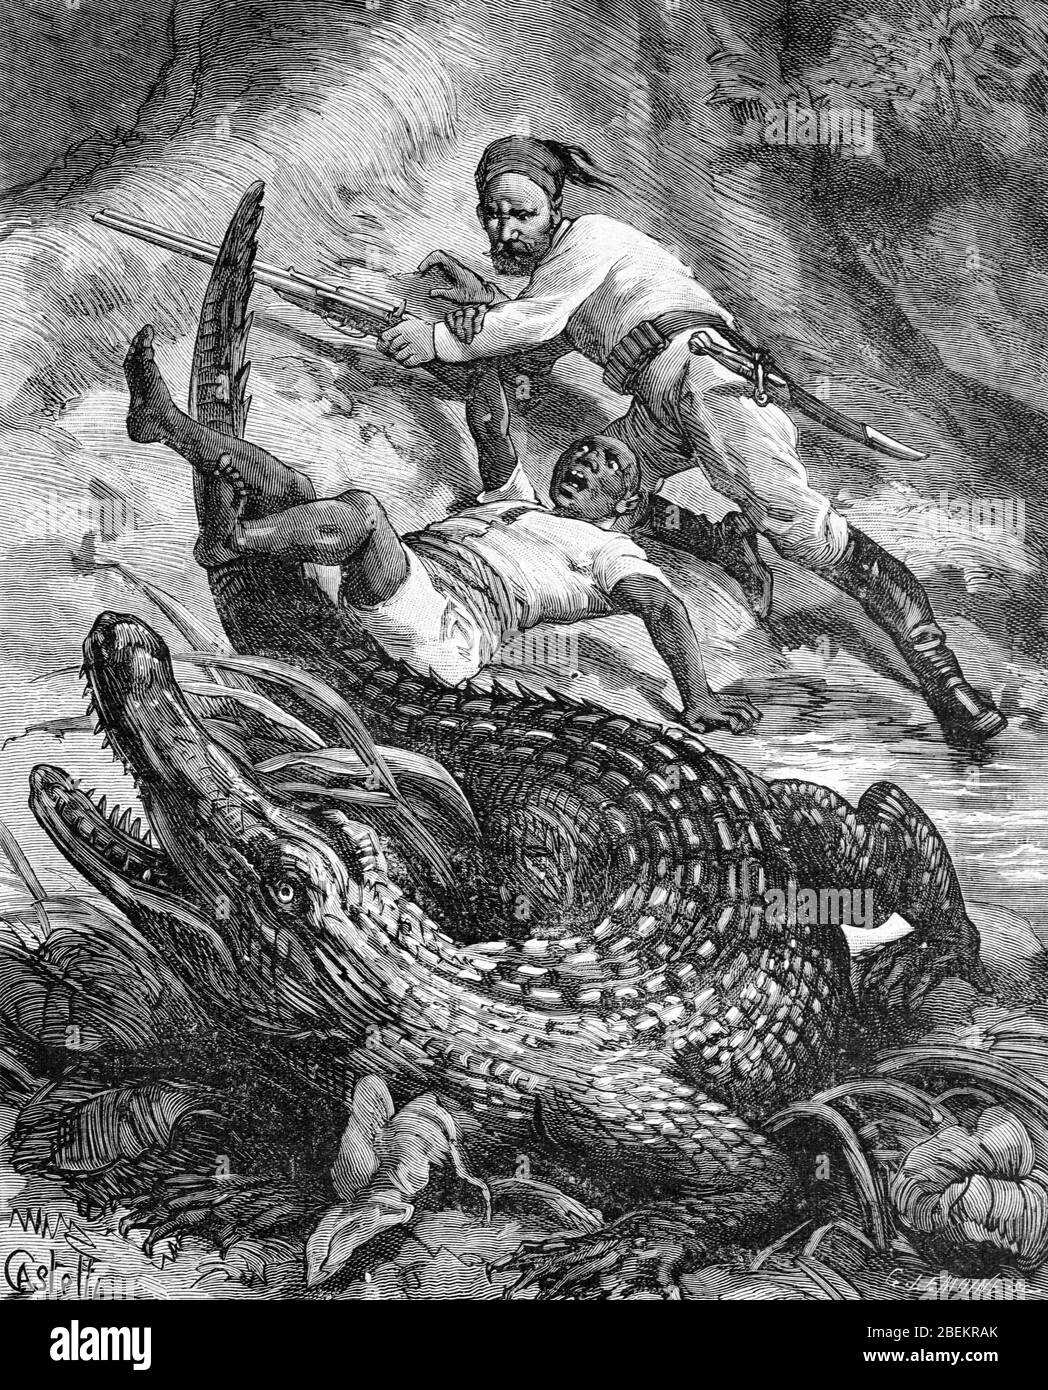 Krokodiljagd, Krokodiljäger oder Krokodiljagd in Zentralafrika. Vintage oder Alte Illustration oder Gravur 1887 Stockfoto